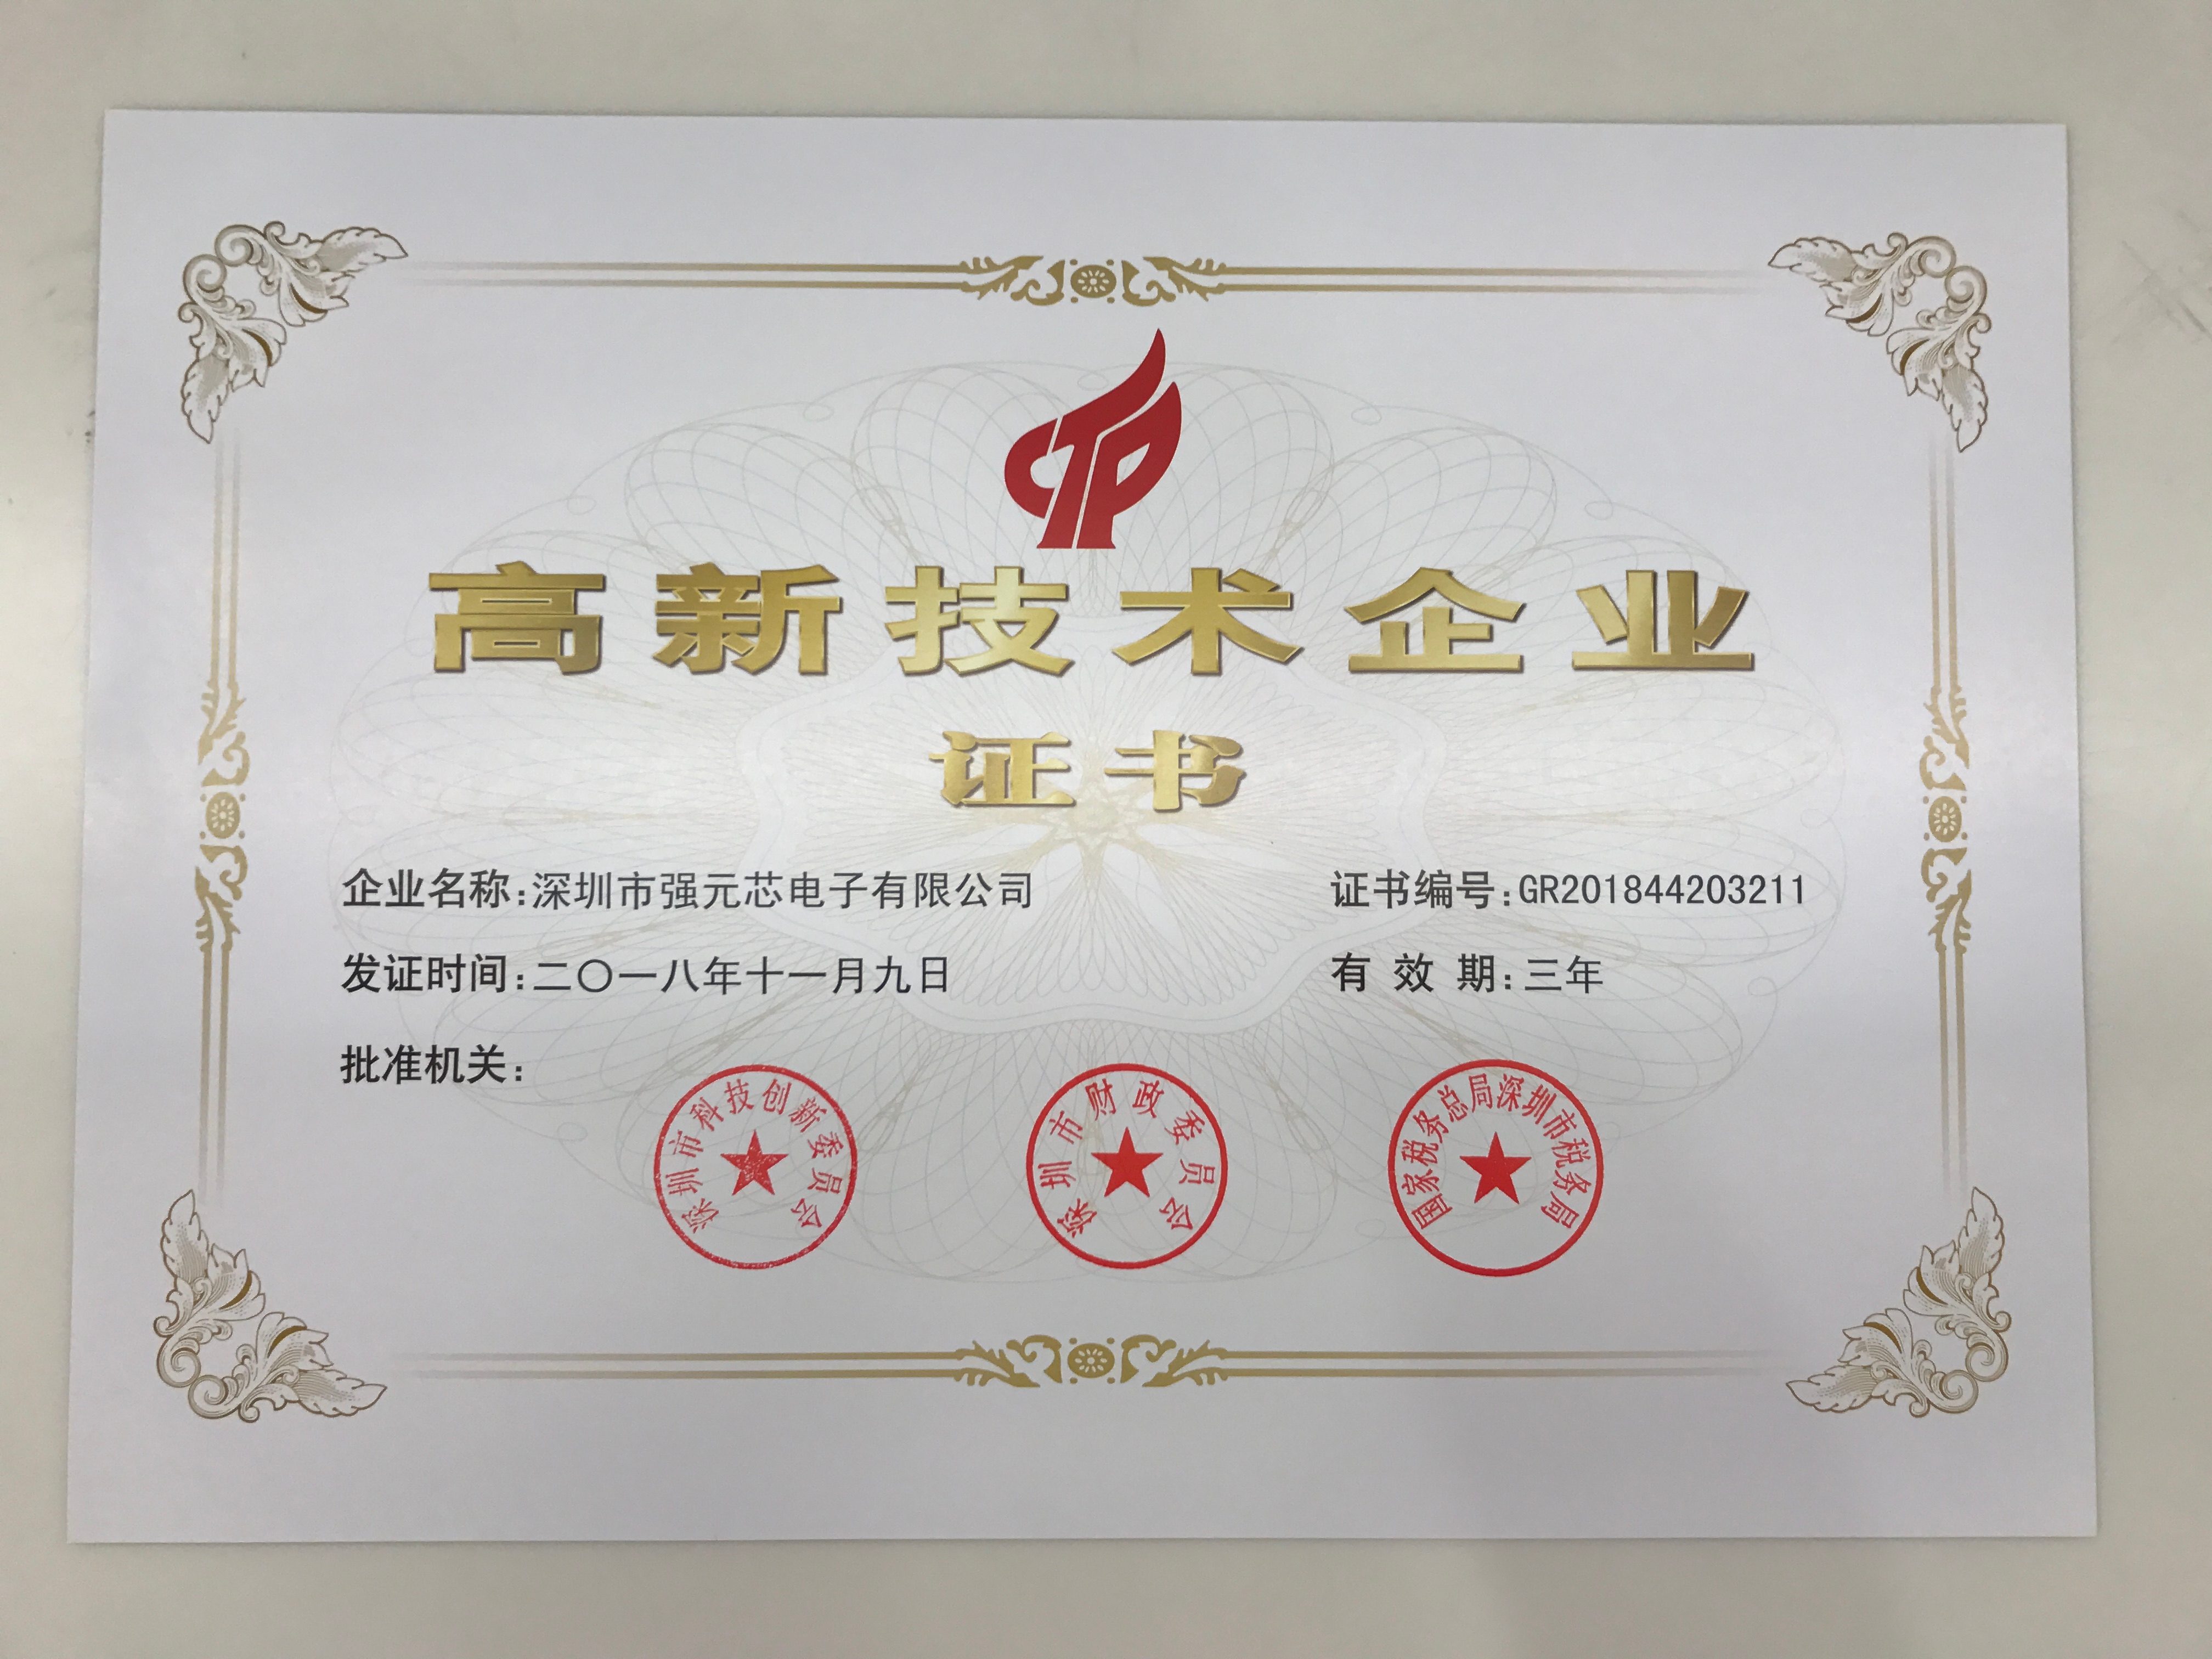 强元芯获得国家高新技术企业证书